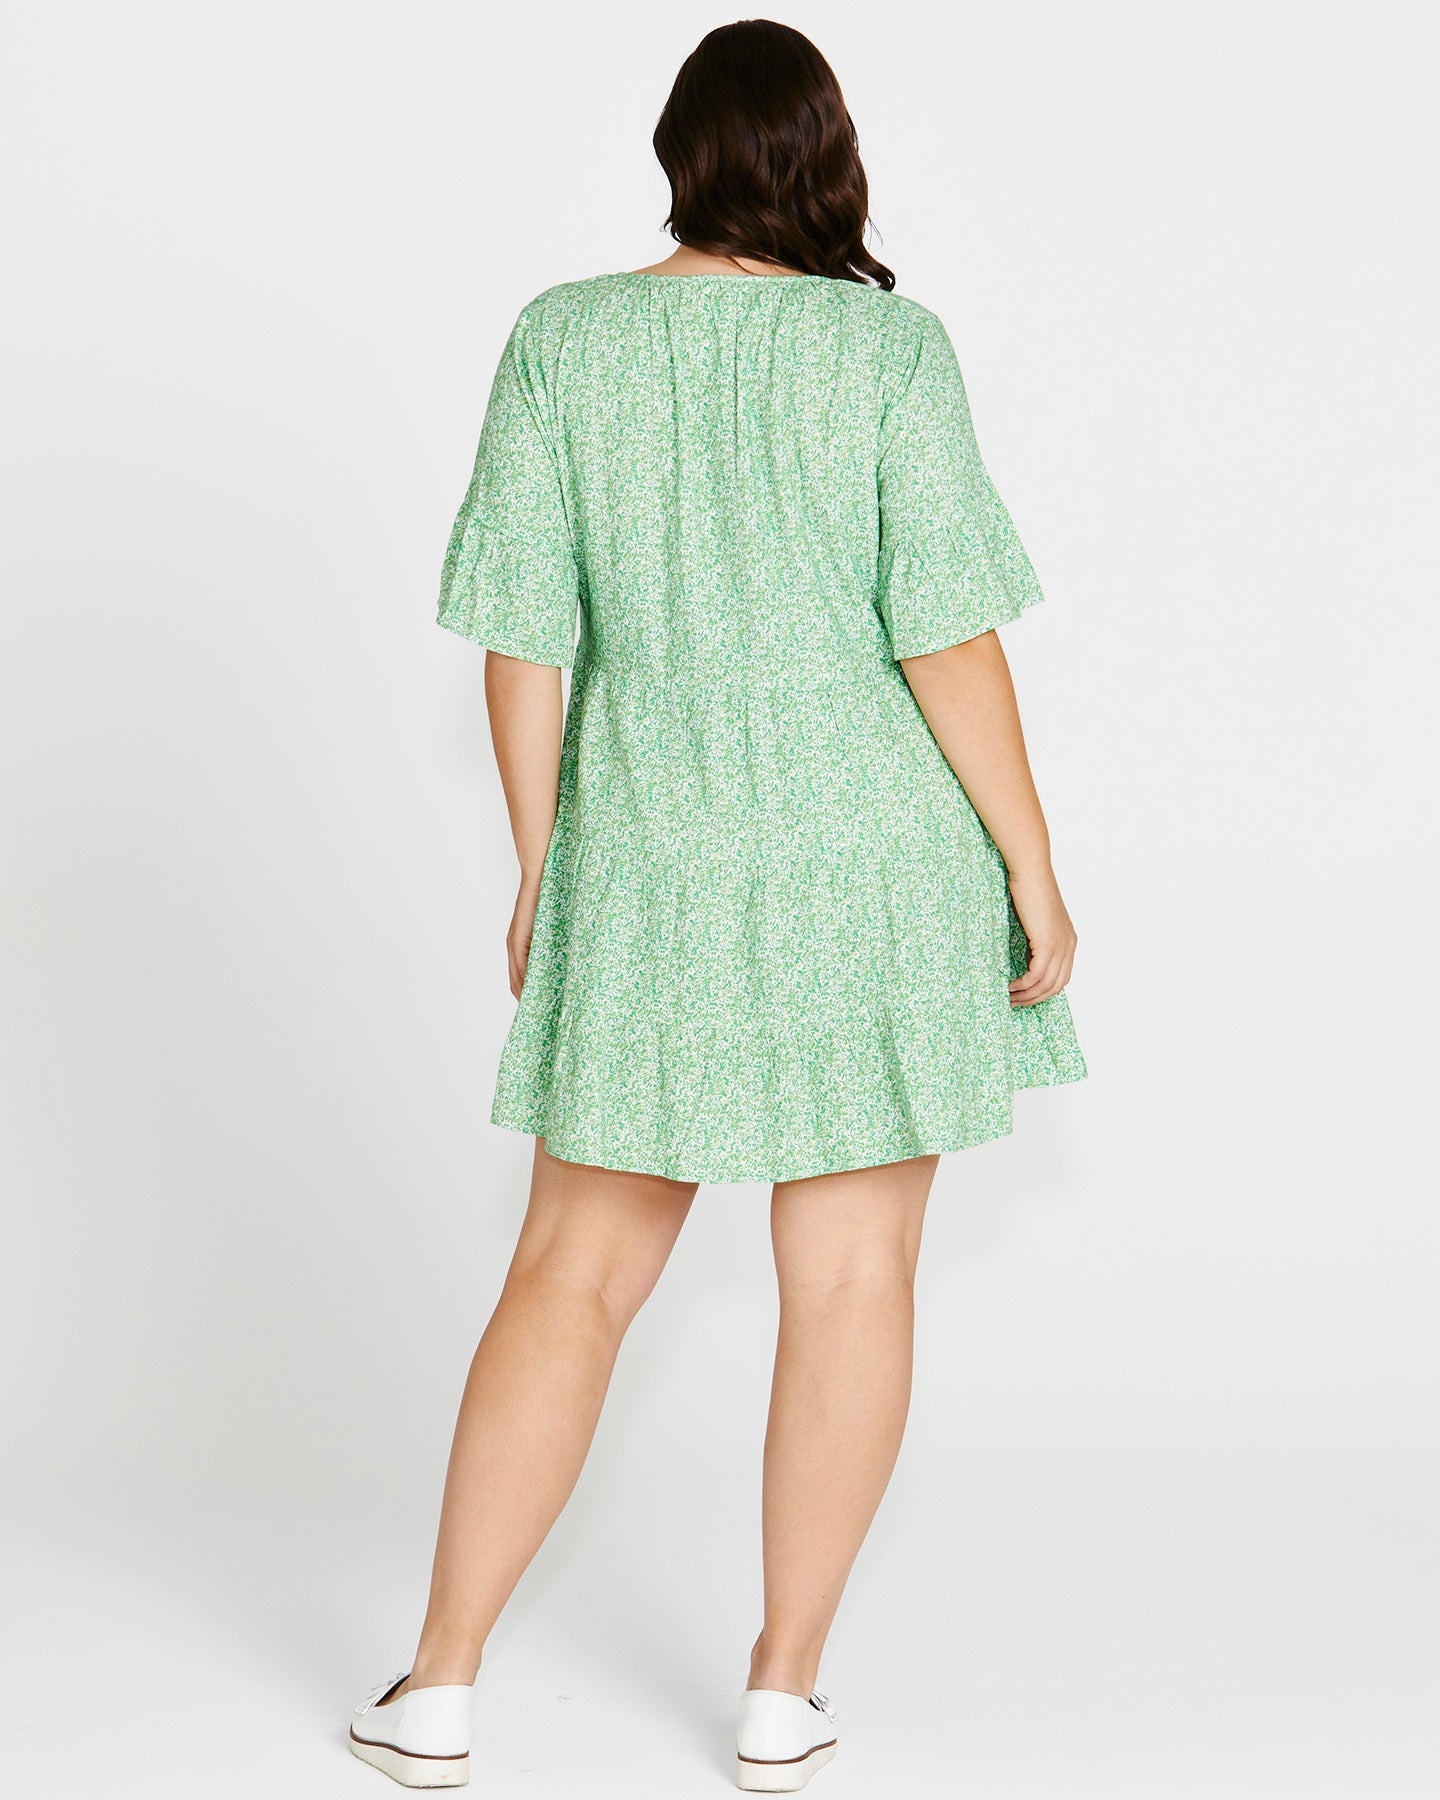 Sally Frill Sleeve Above-Knee Summer Linen-Blend Dress - Green Wild Animal Print